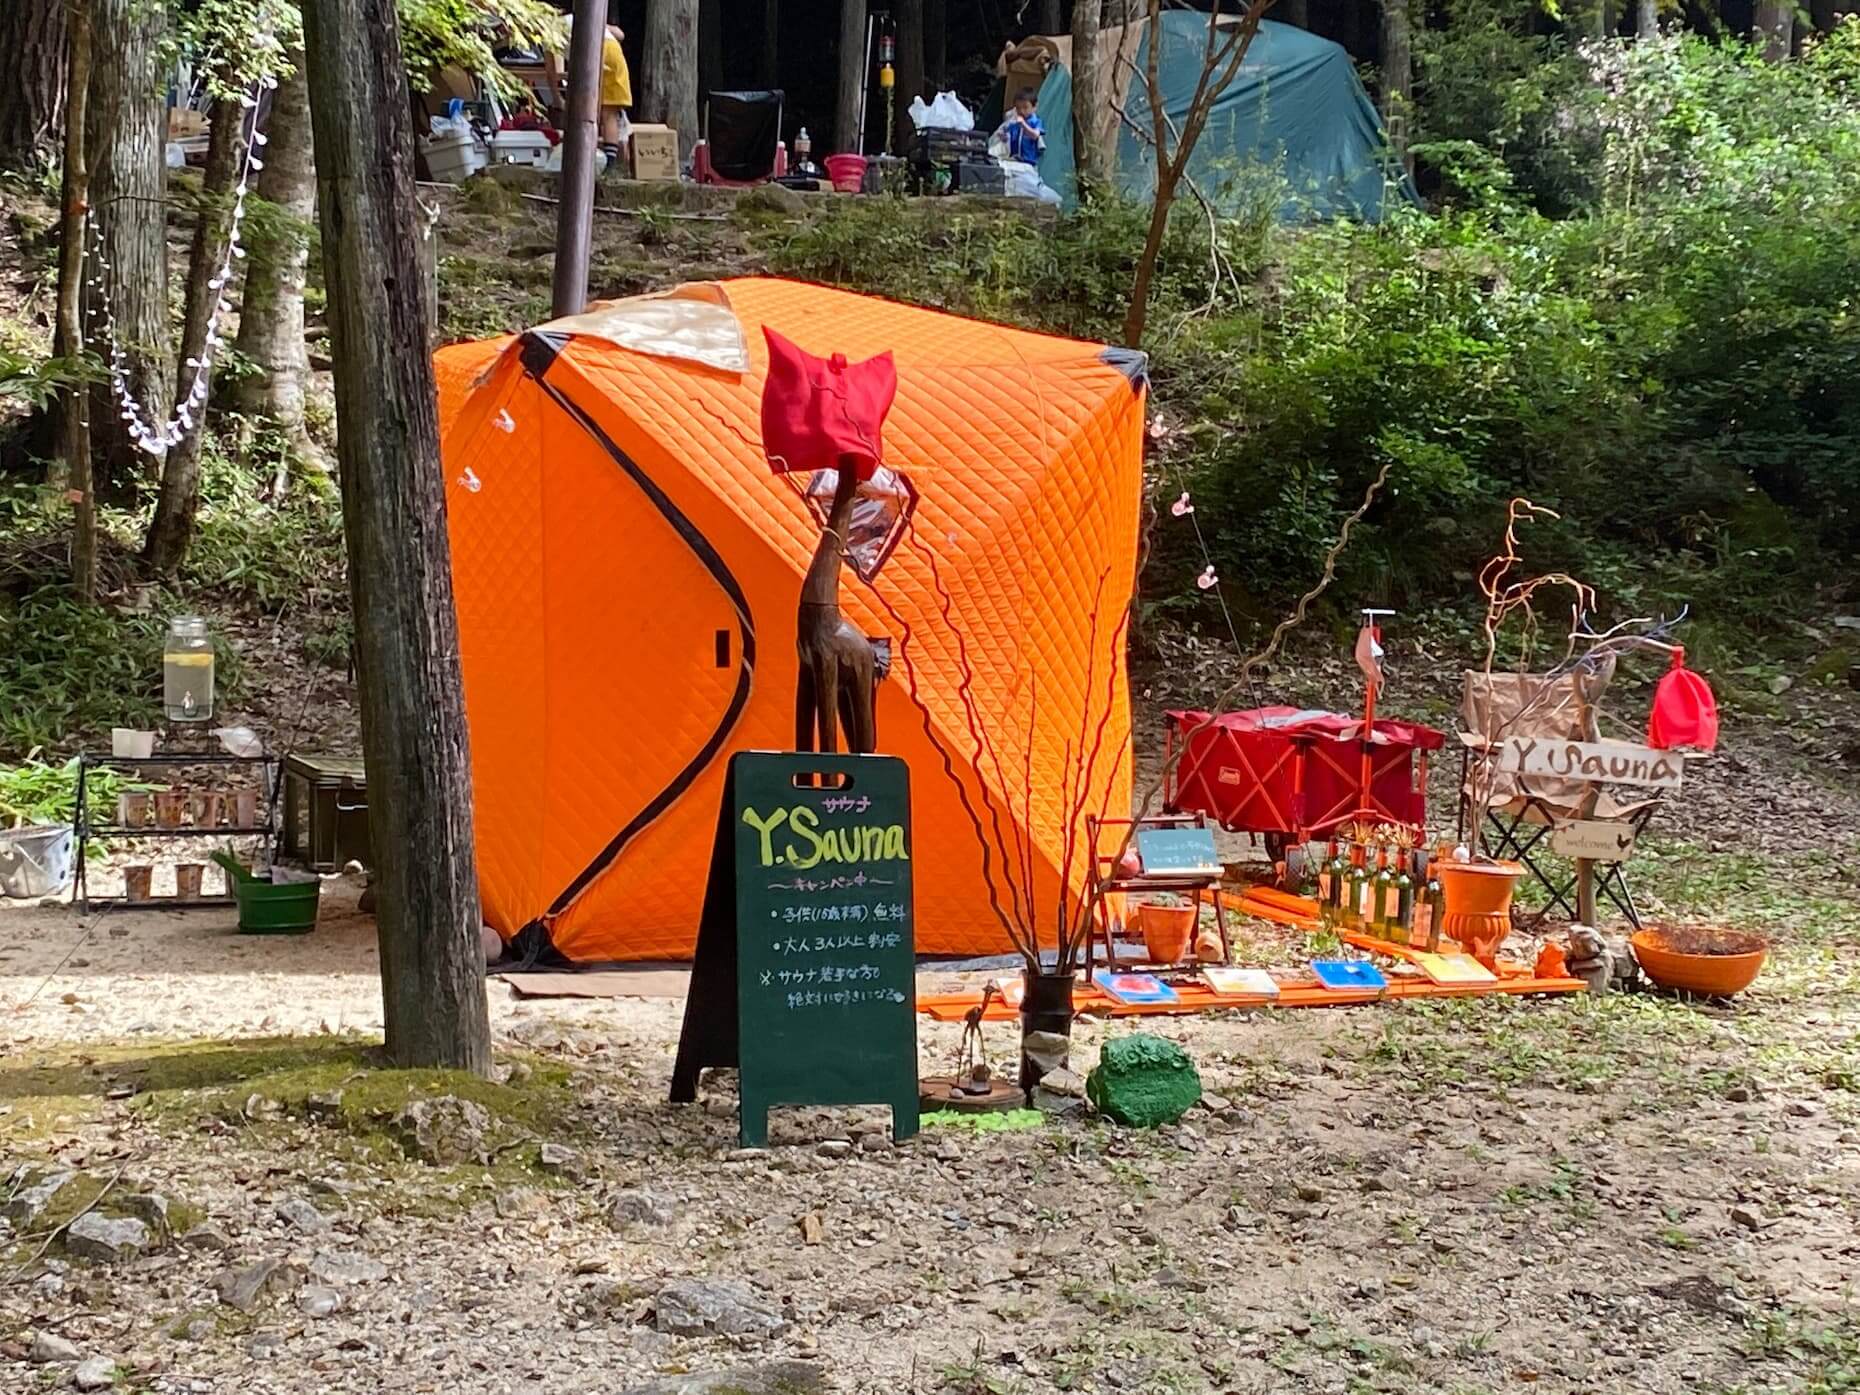 キャンプ場に設置されていたテントサウナ